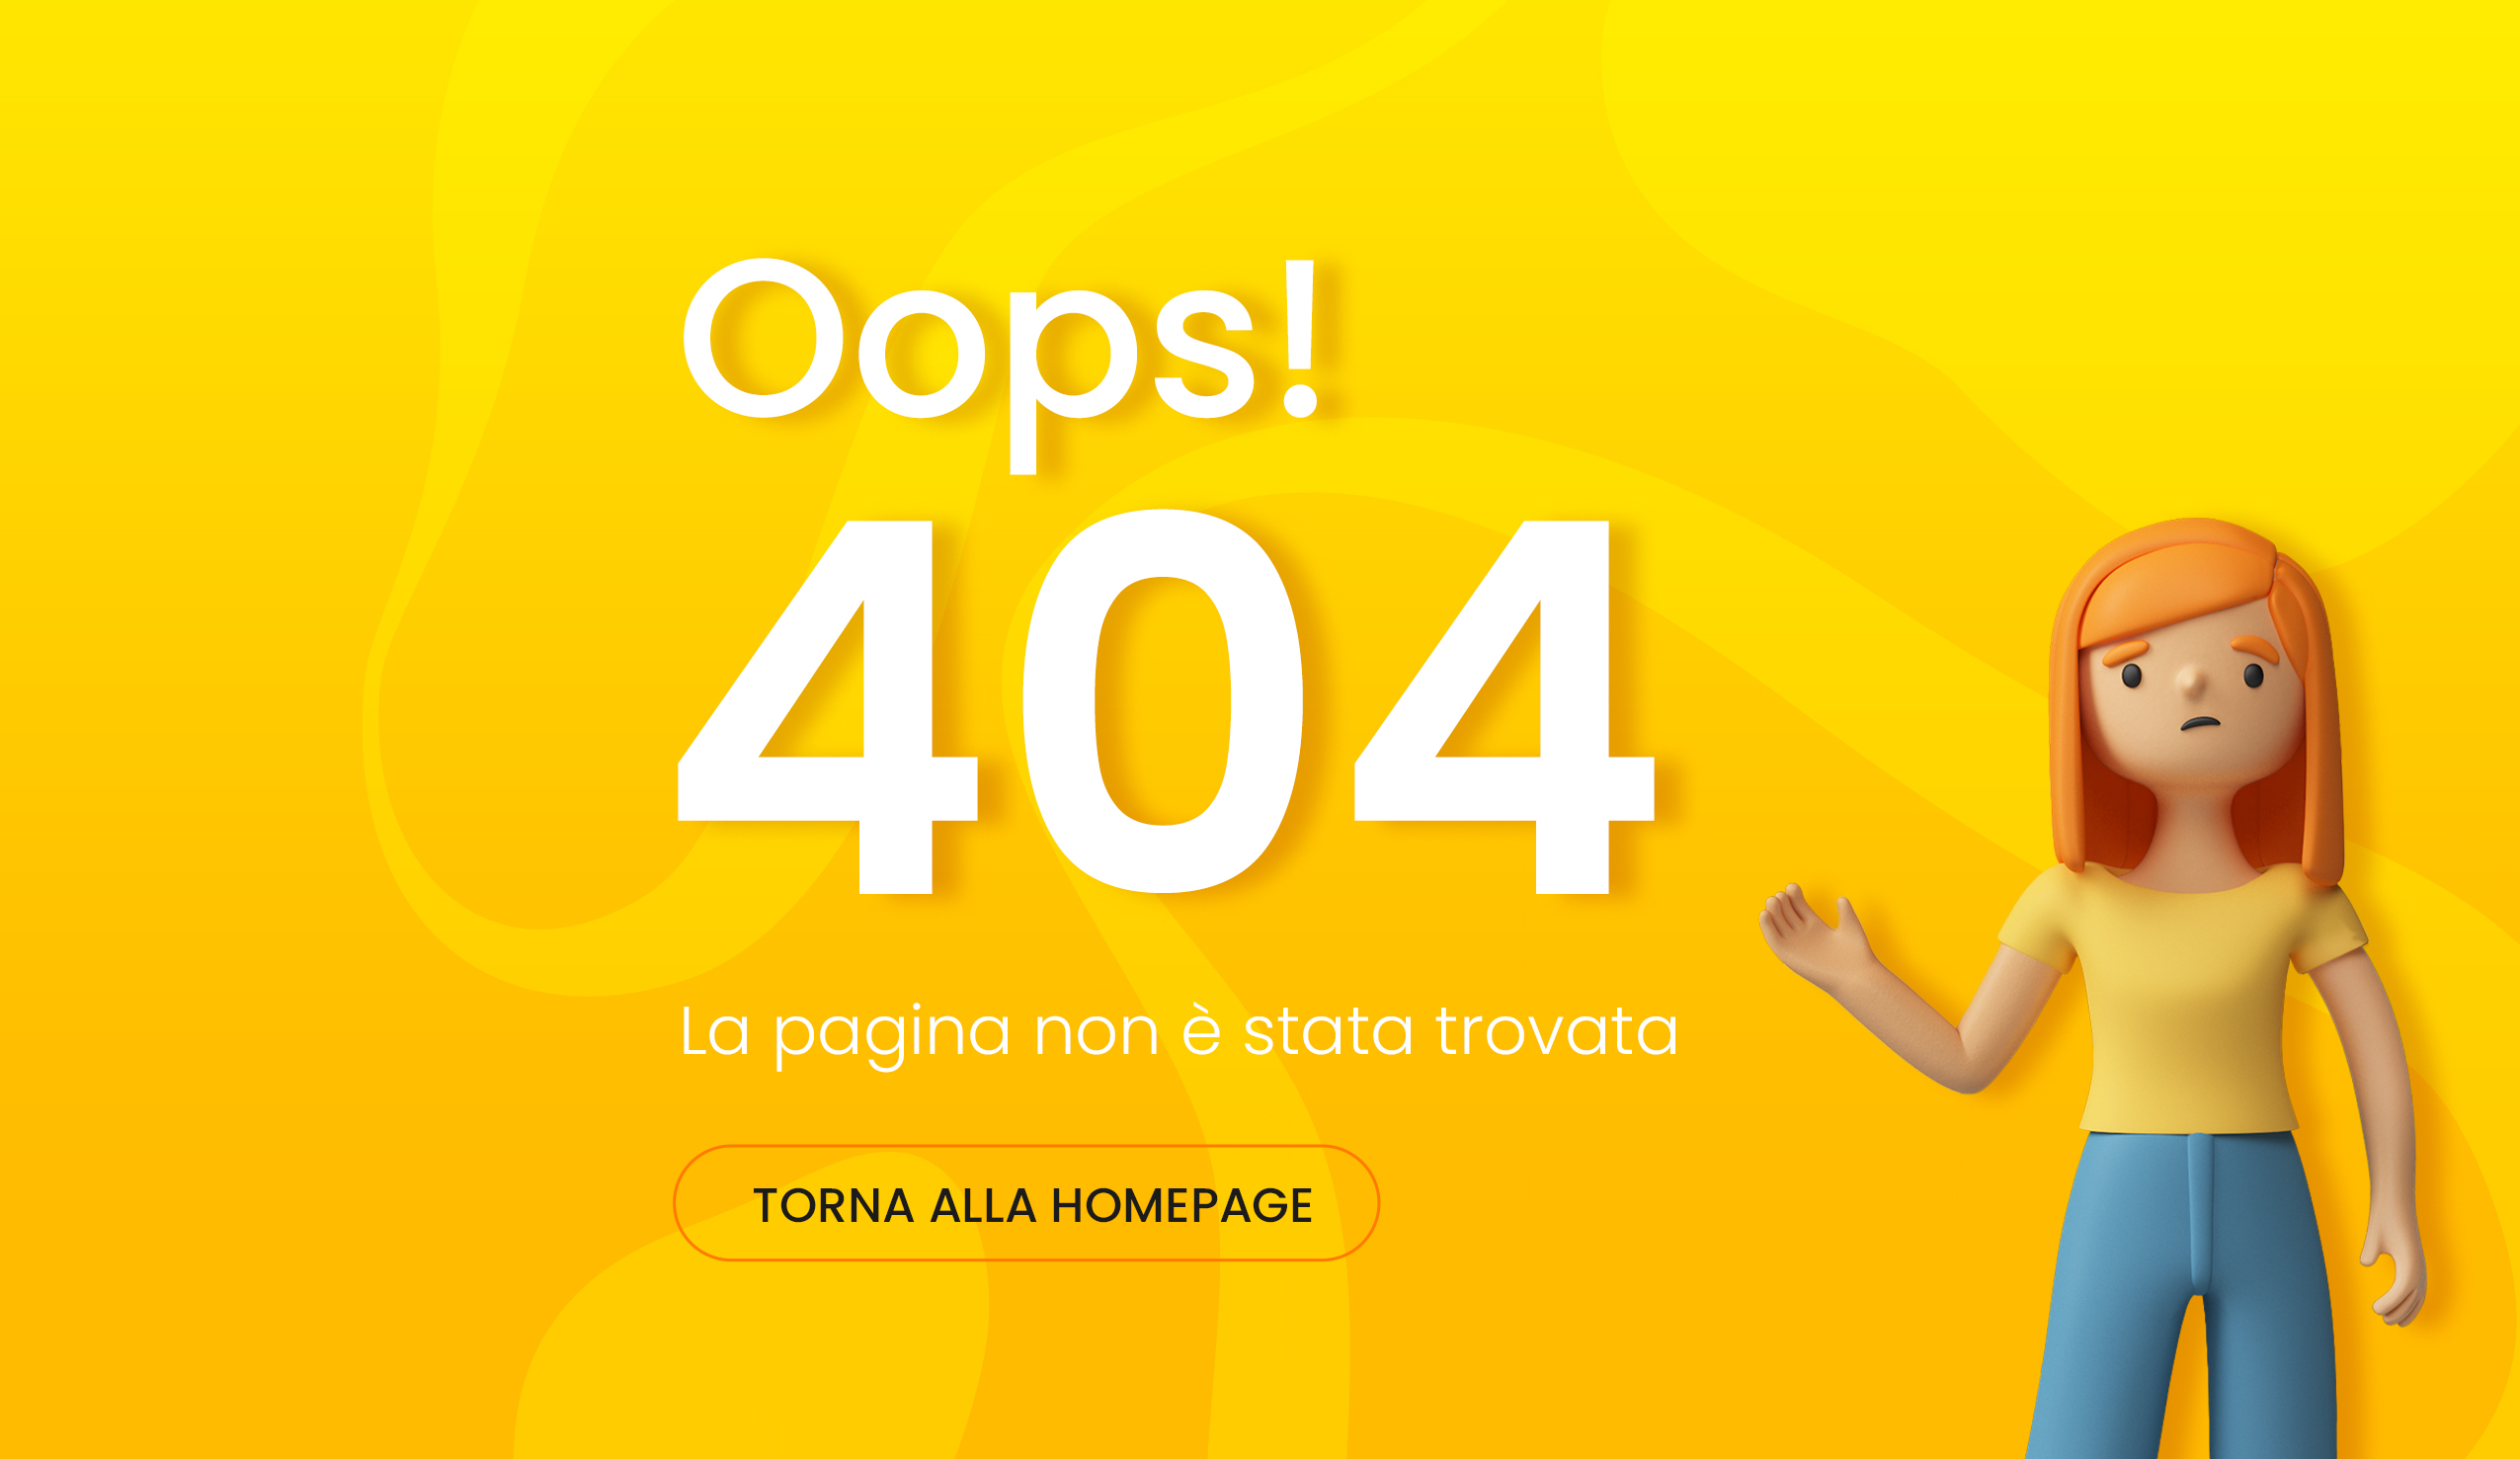 Errore 404, cosa significa questa pagina di errore?